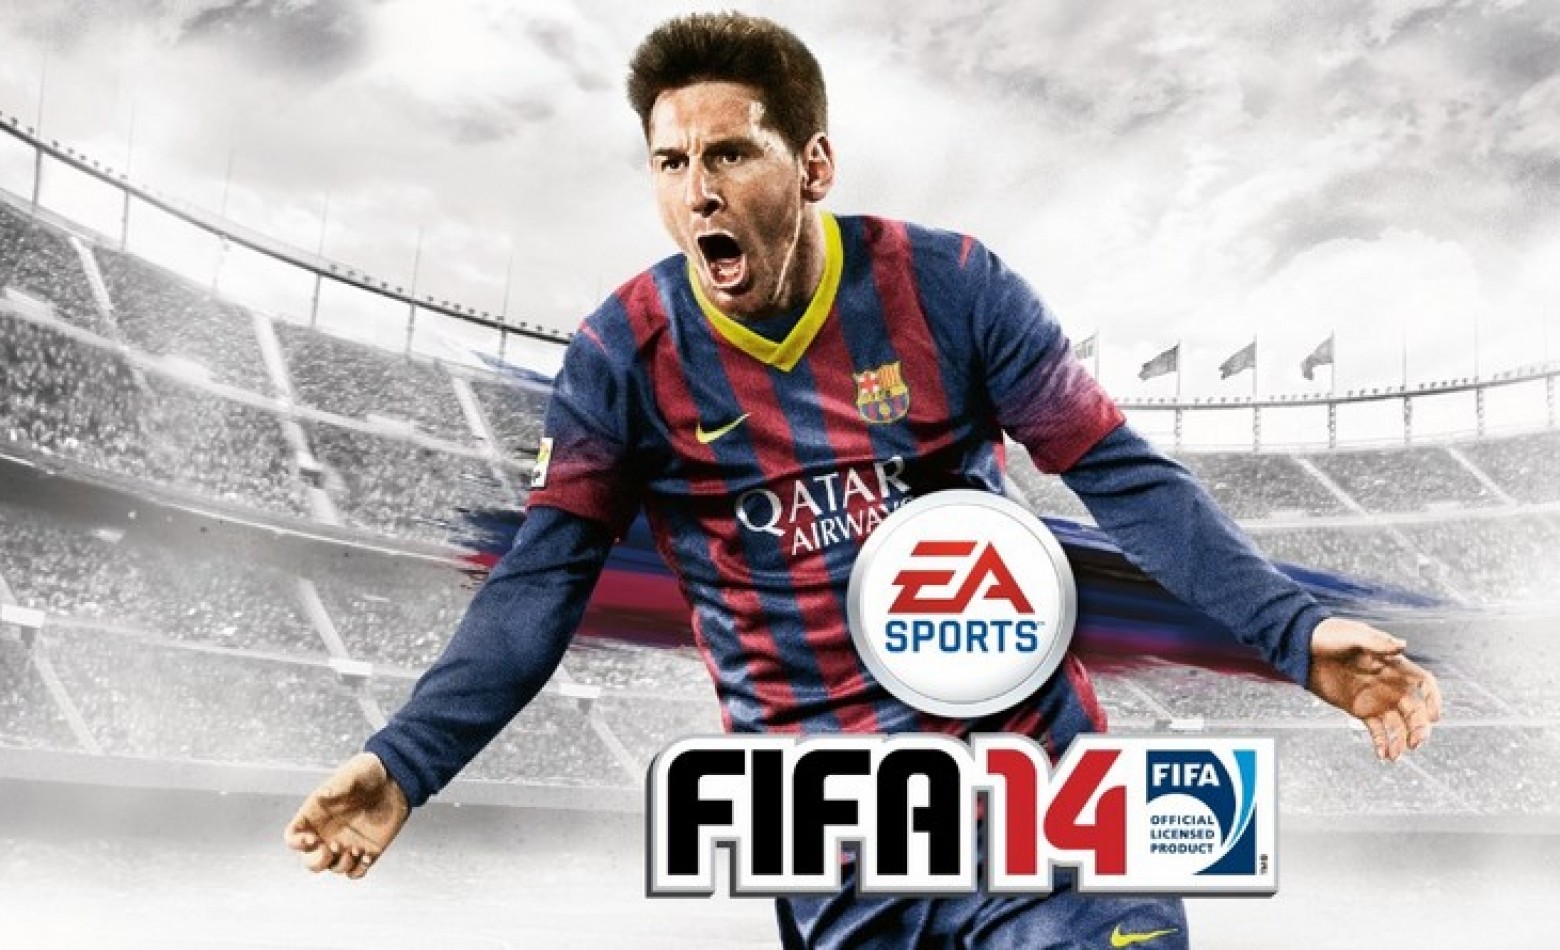 FIFA 14 é o jogo mais vendido no Brasil no ano passado (mesmo tendo sido lançado em 2013)